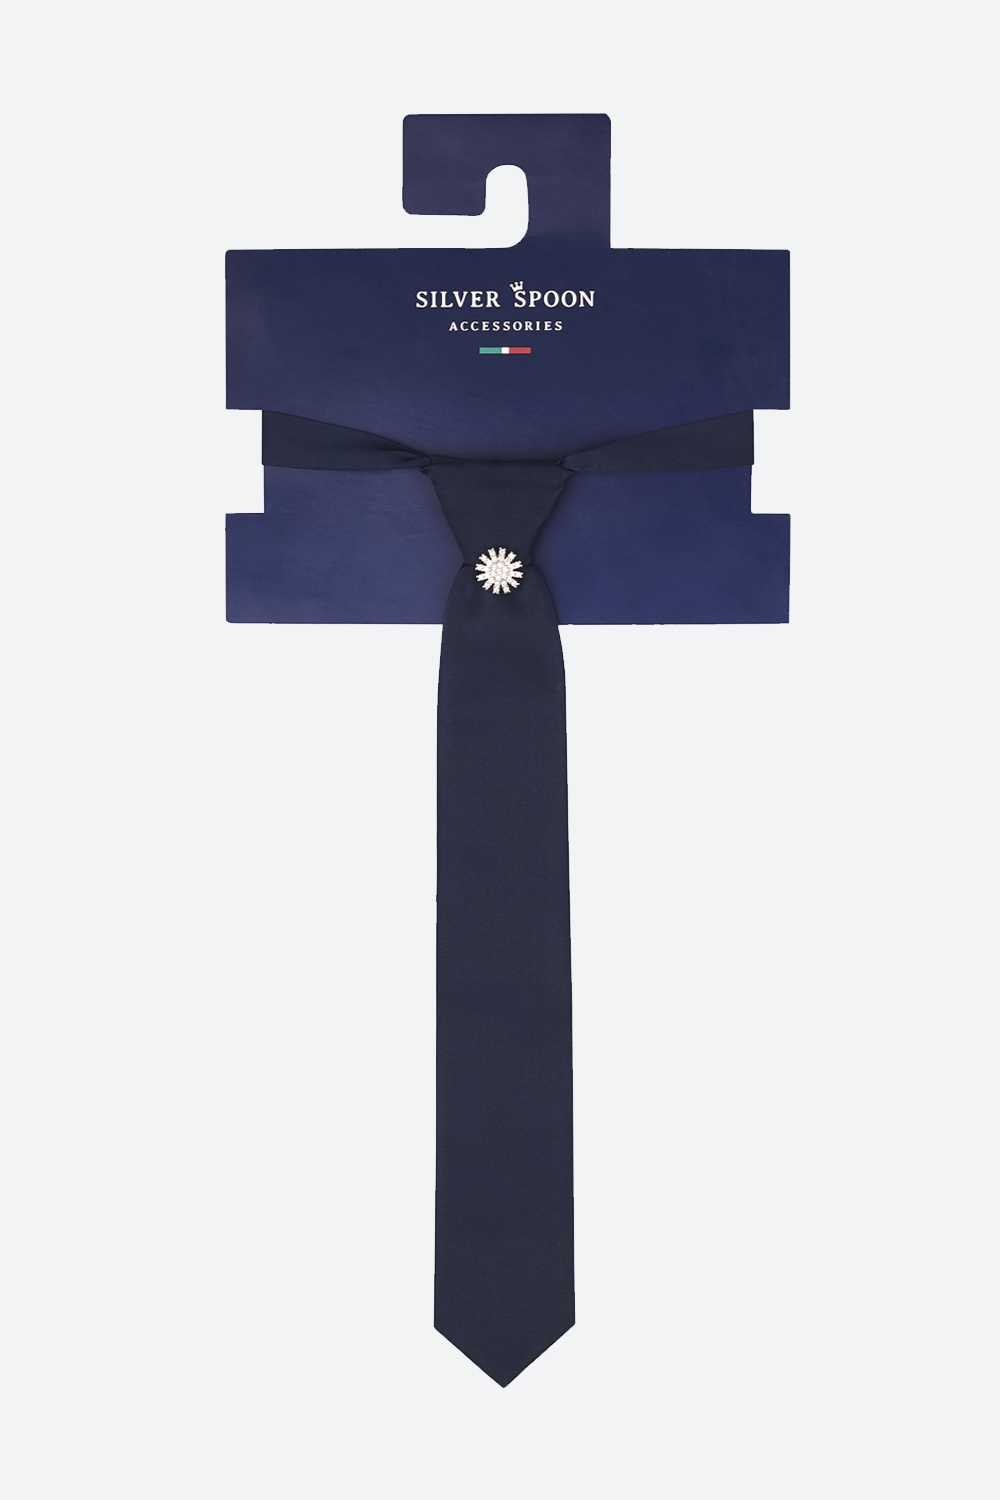 Узкий, укороченный галстук с фиксированным узлом (SSFSG-229-27904-300) Silver spoon